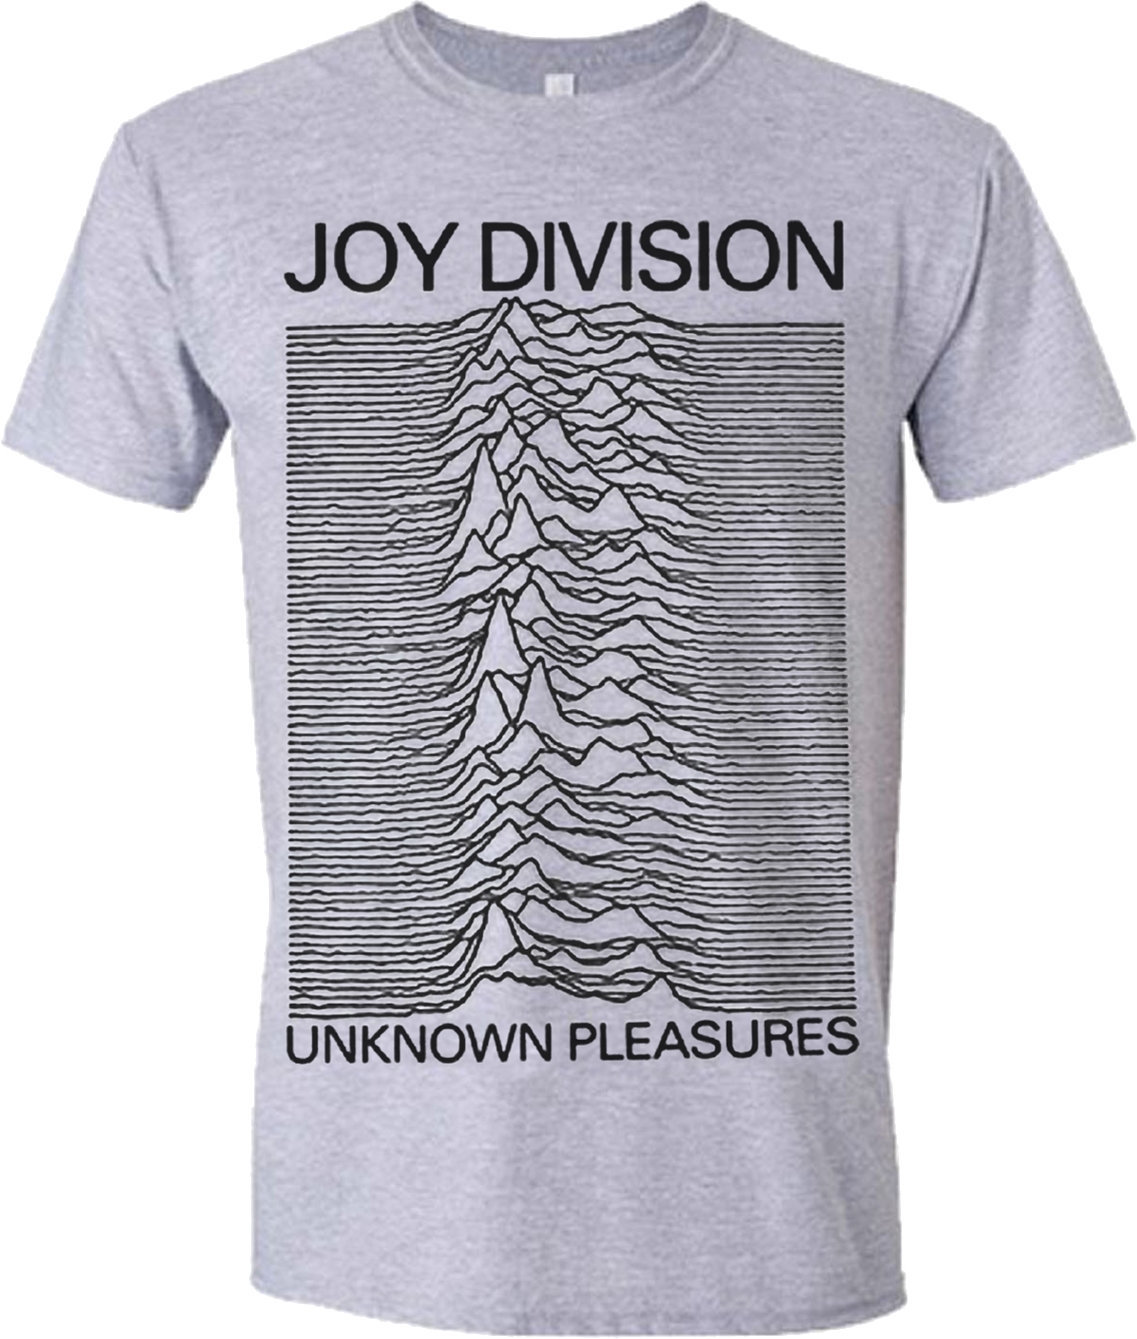 T-Shirt Joy Division T-Shirt Unknown Pleasures Grey L